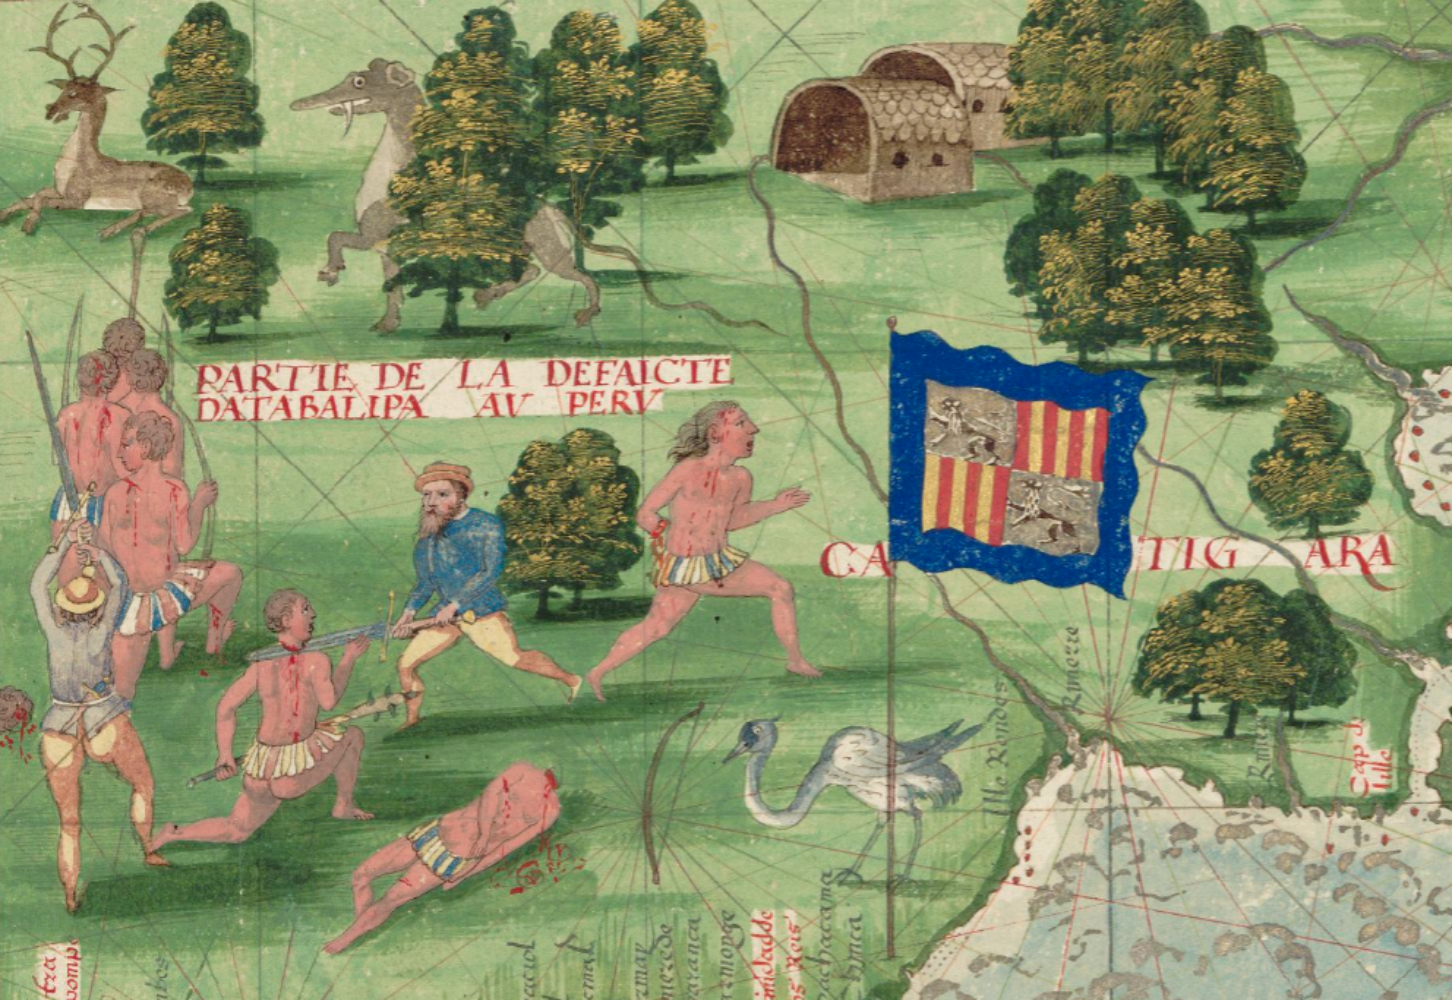 La expedición naval catalana de Cabot inicia la exploración de Río de la Plata